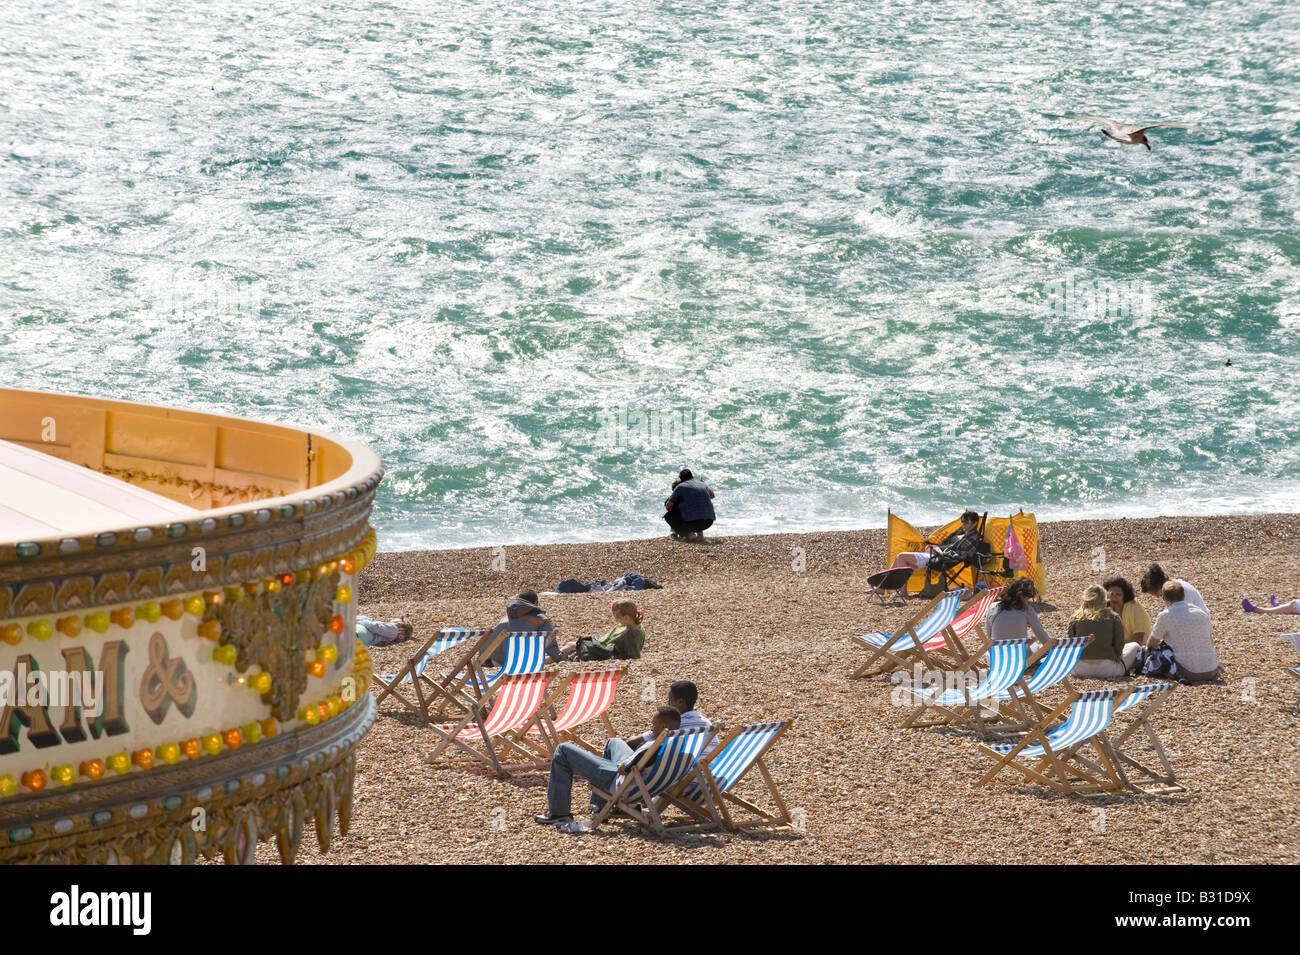 La plage de Brighton Pier,, côte sud, Angleterre, Royaume-Uni Banque D'Images